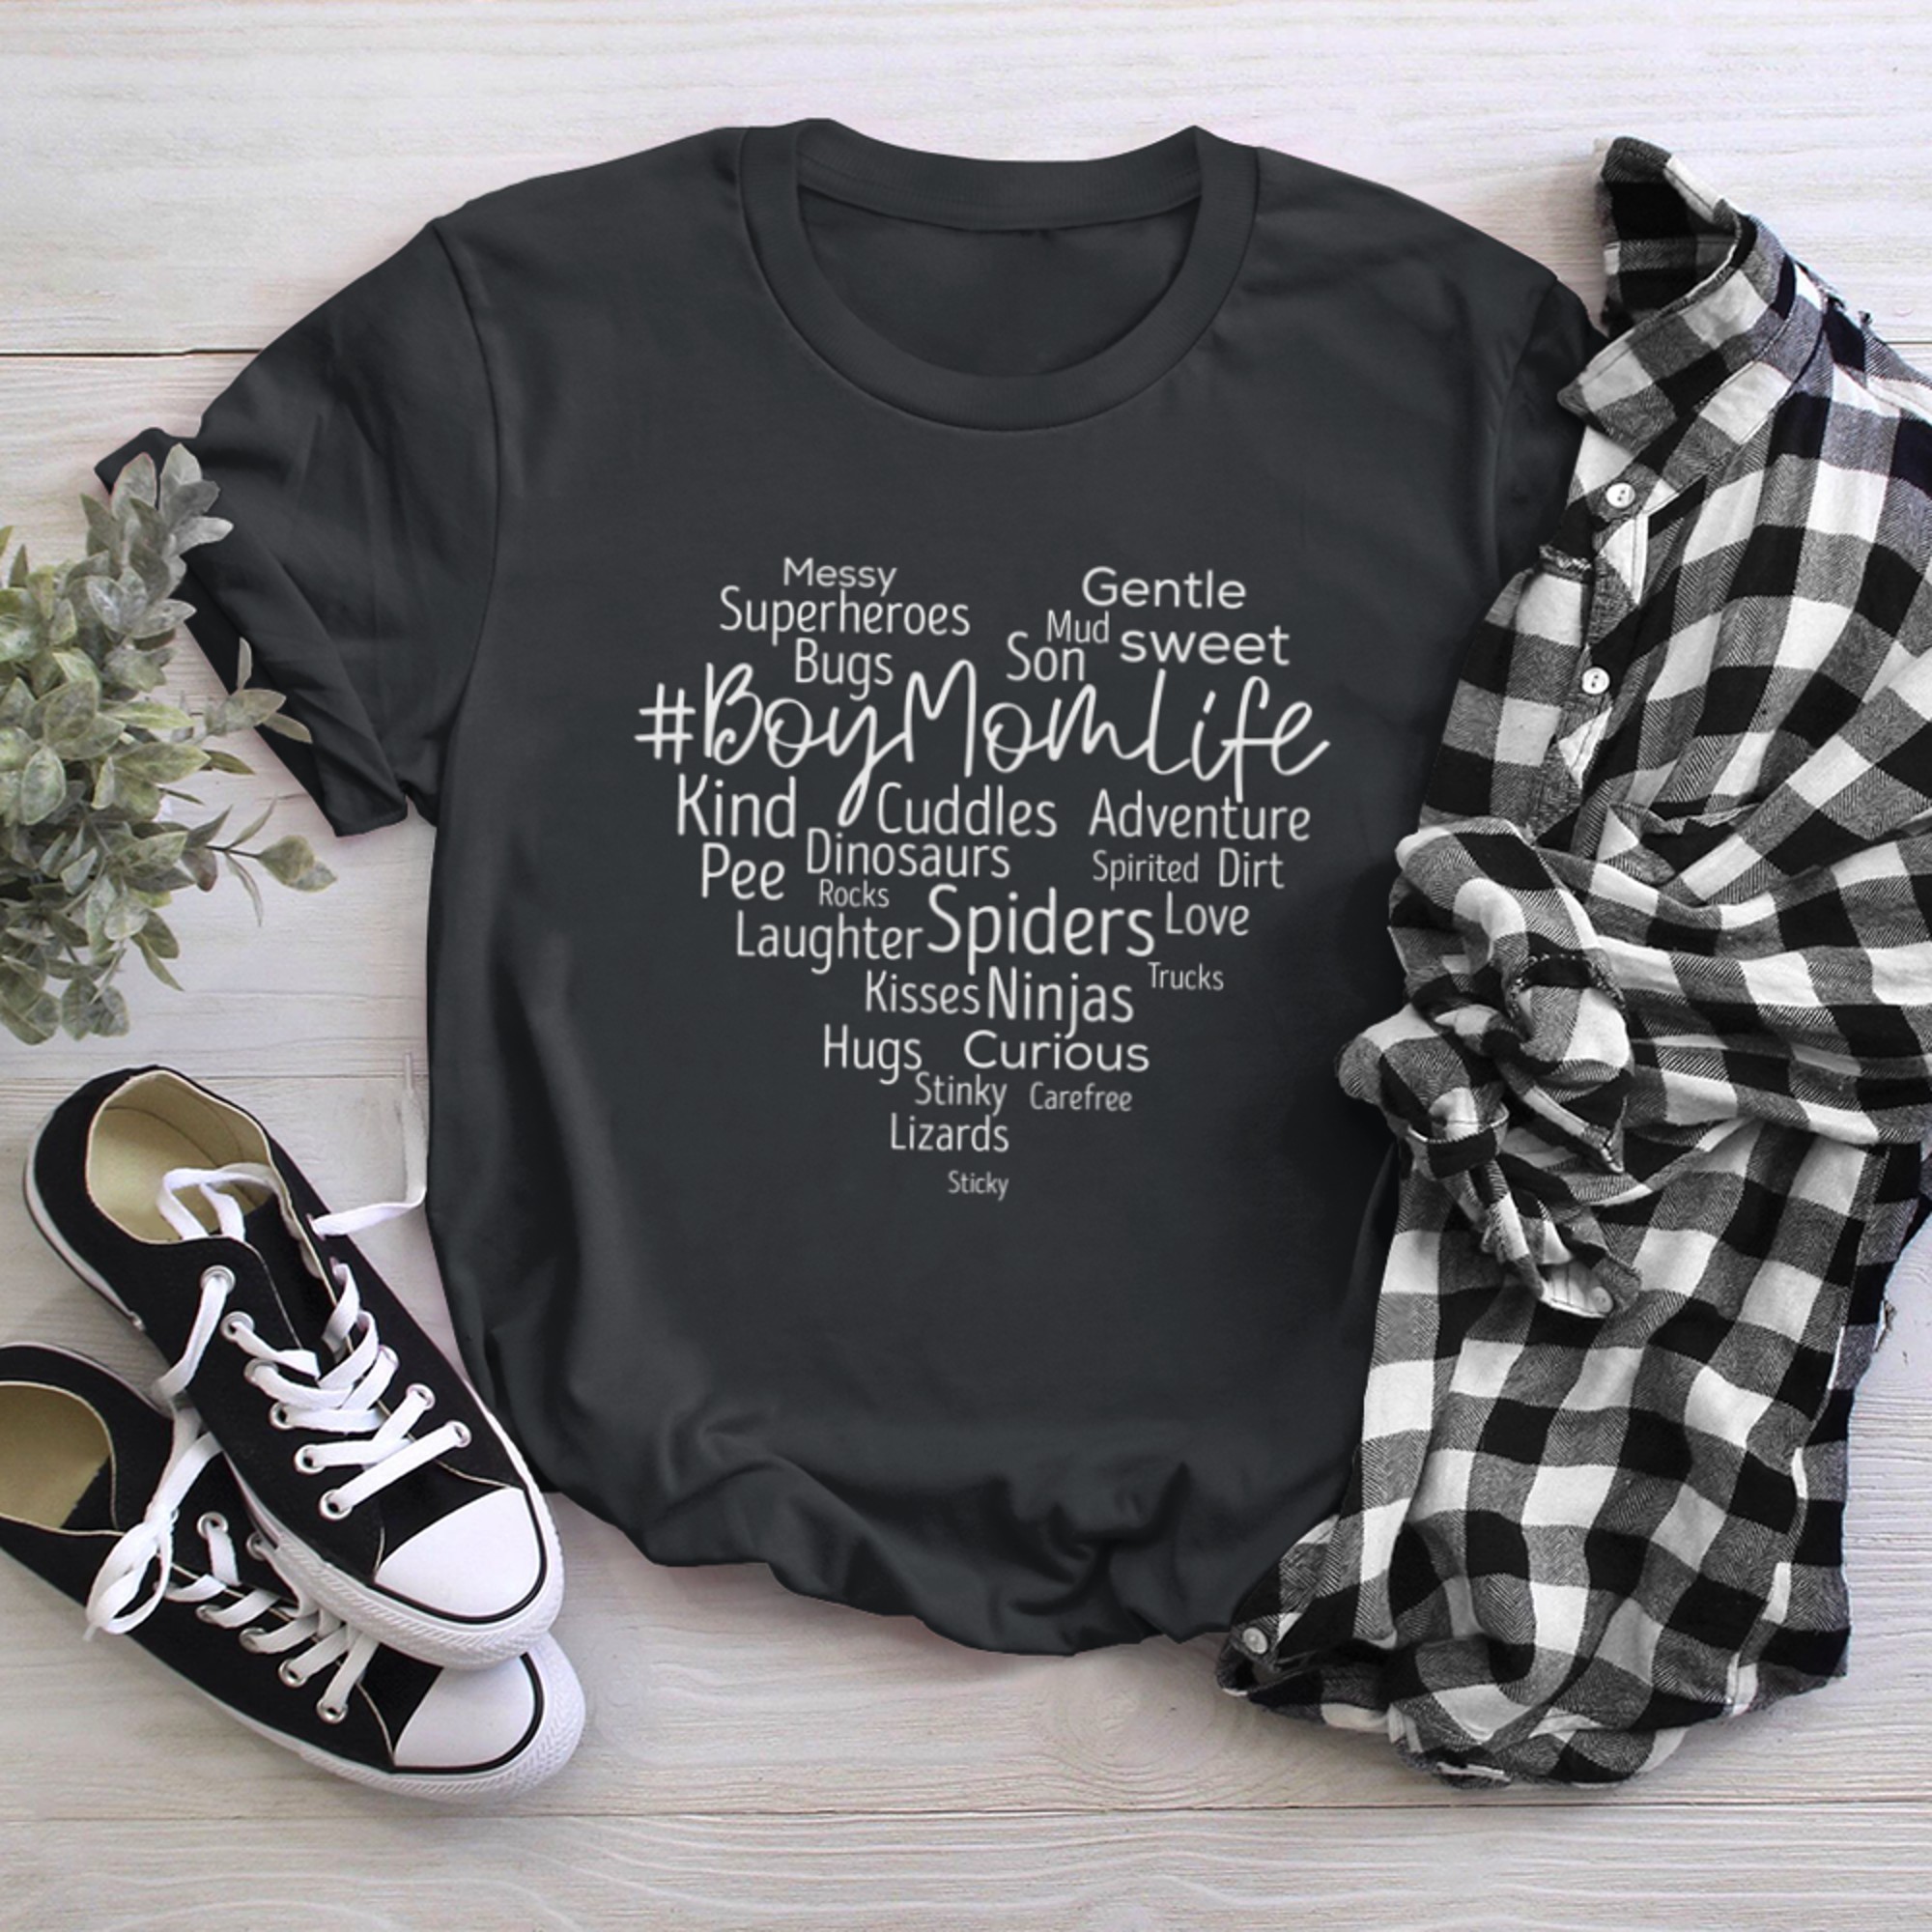 Mom of Funny #BoyMomLife Mom Life t-shirt black